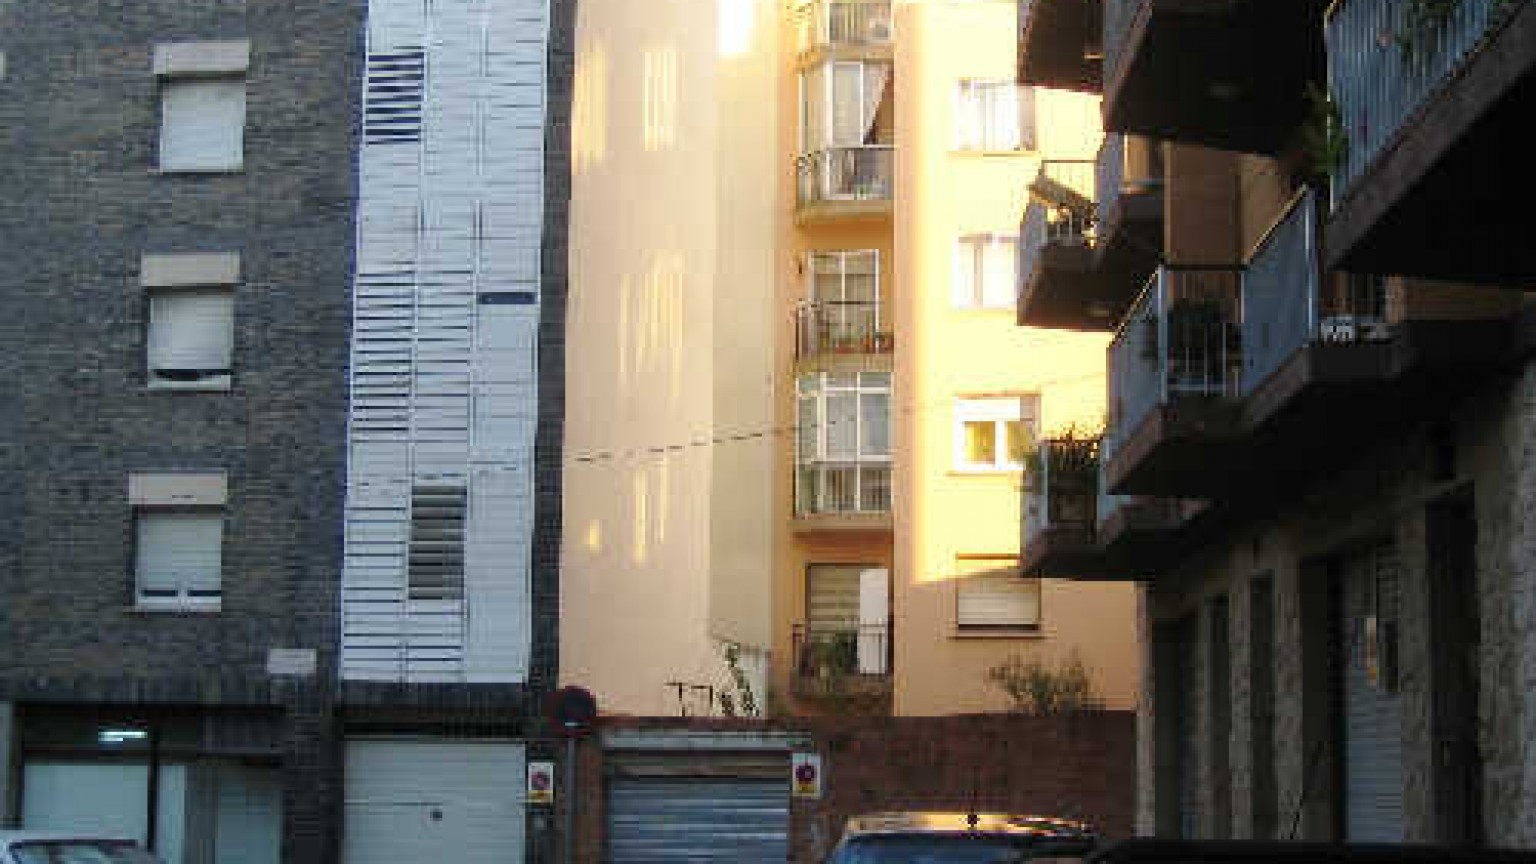 Terrain urbain à vendre, situé  à Figueres, avec un sup.165m²